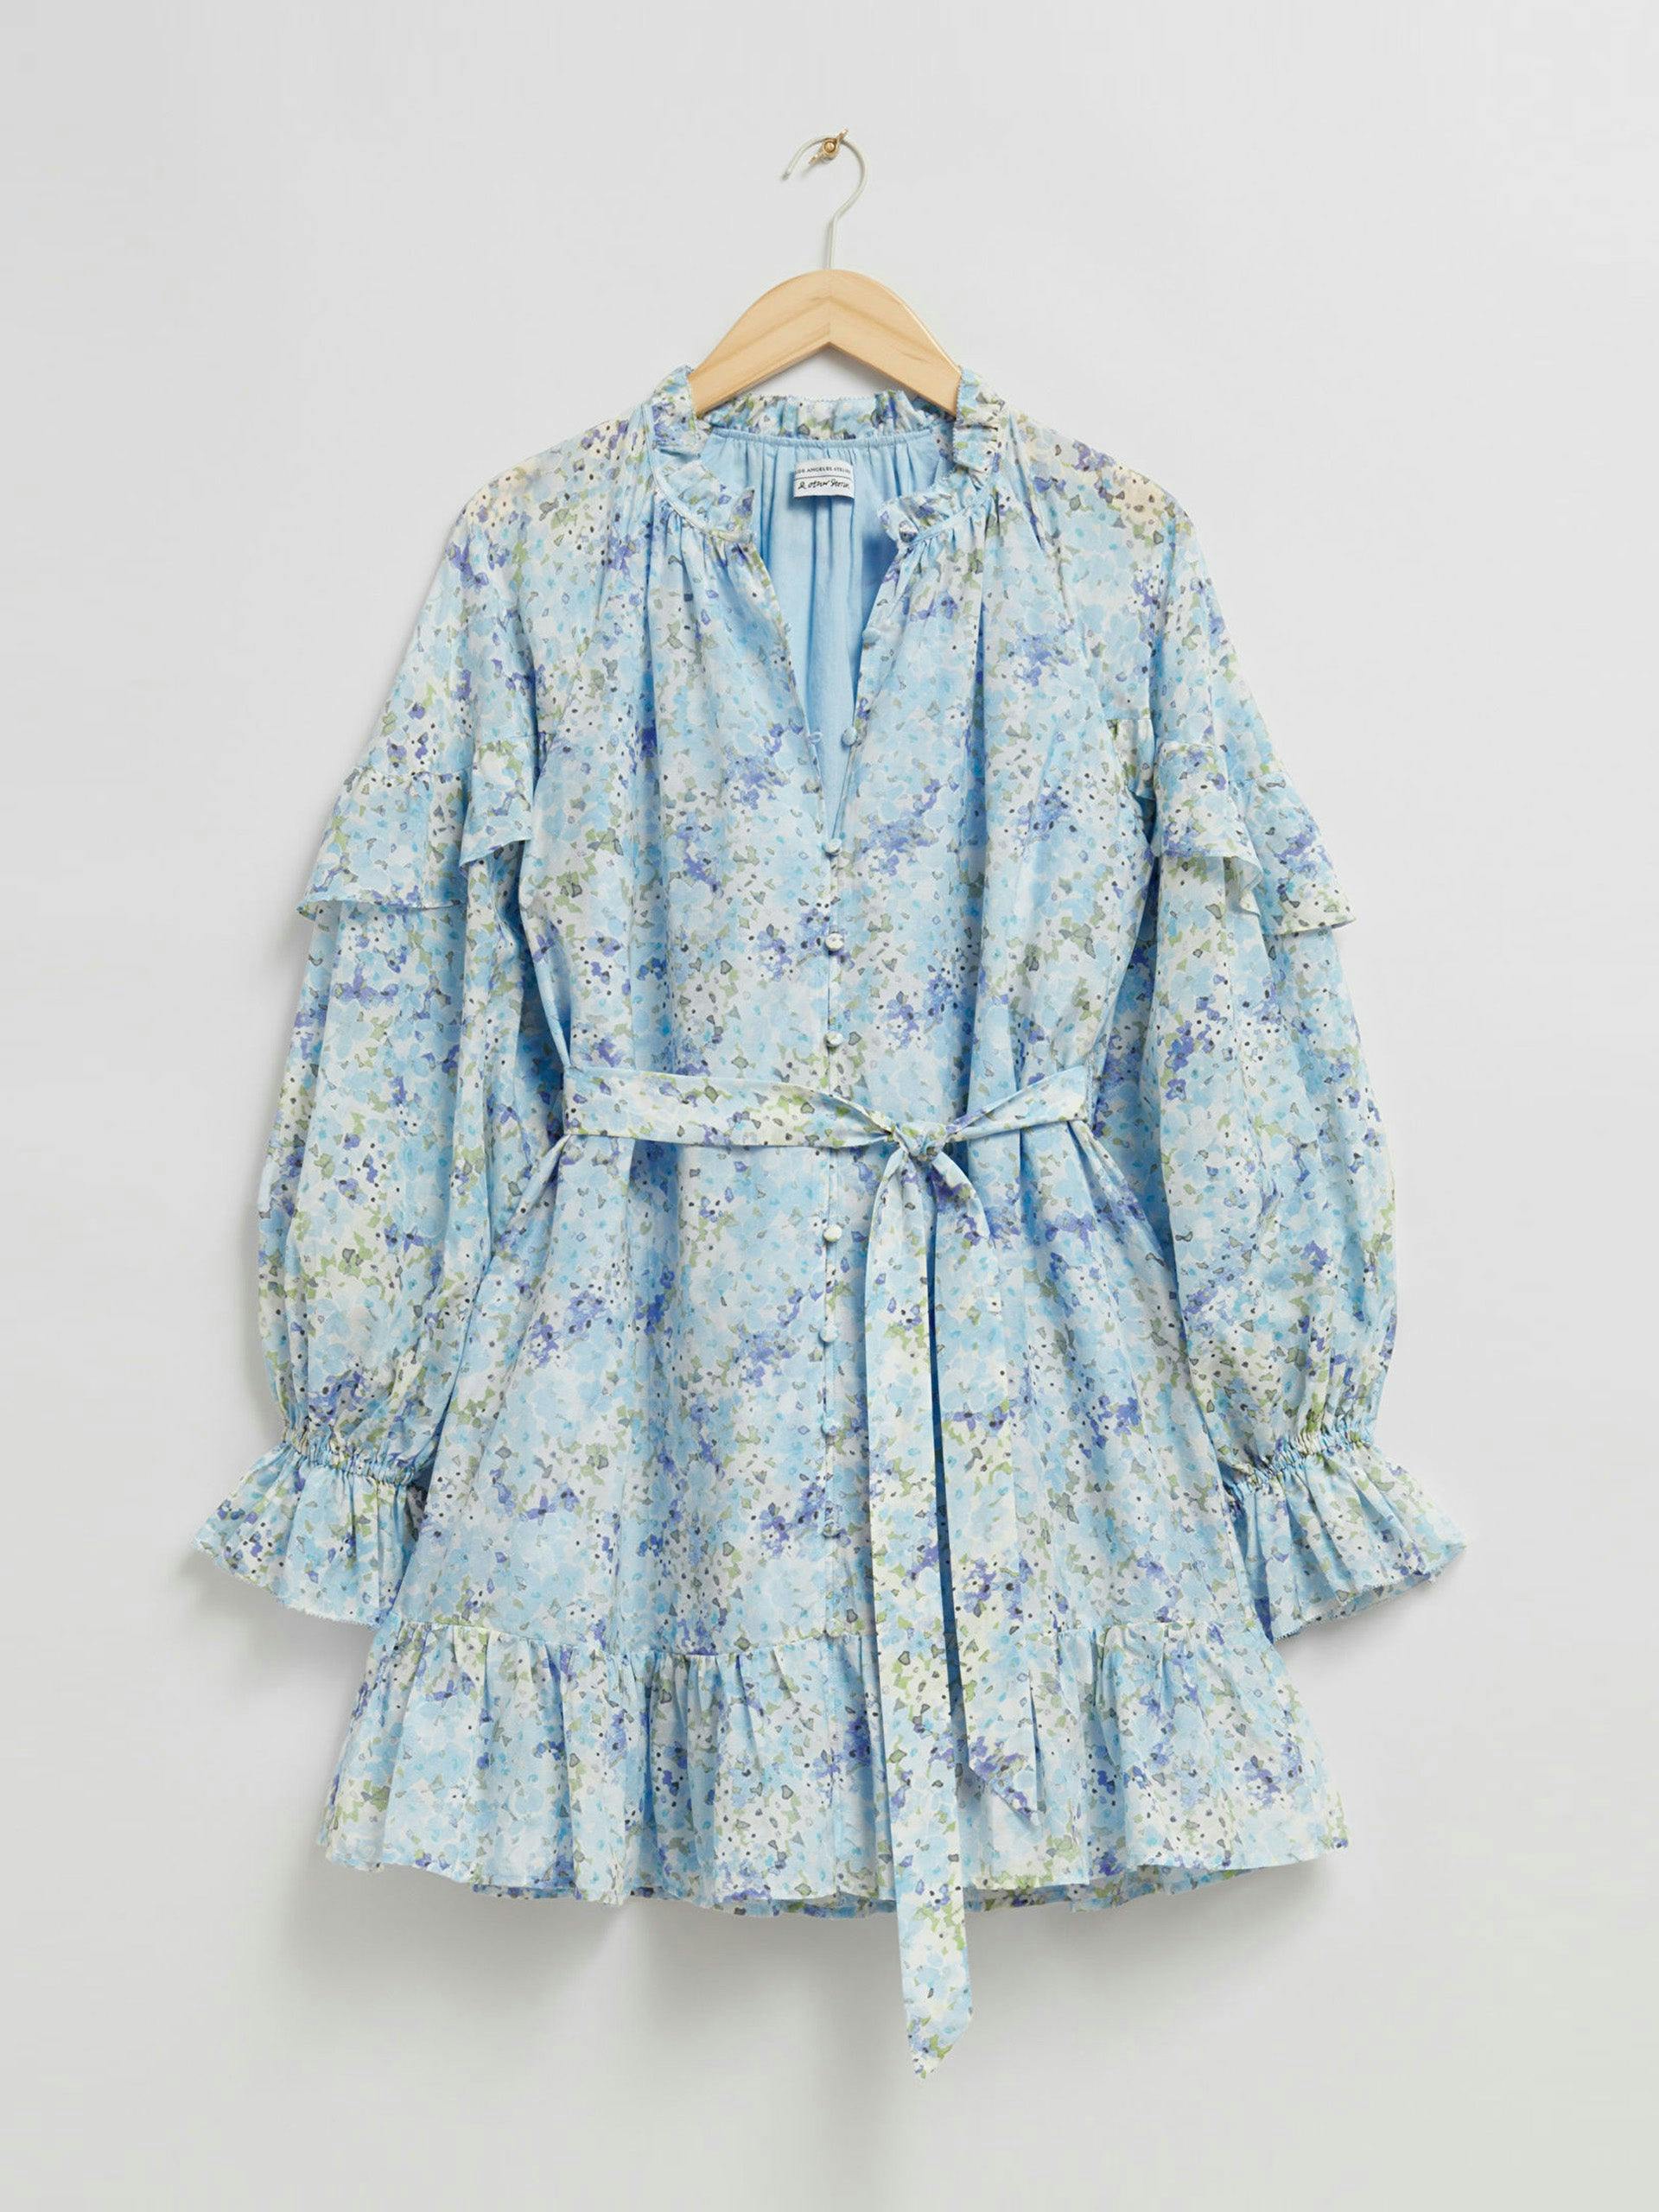 Tiered blue floral mini dress